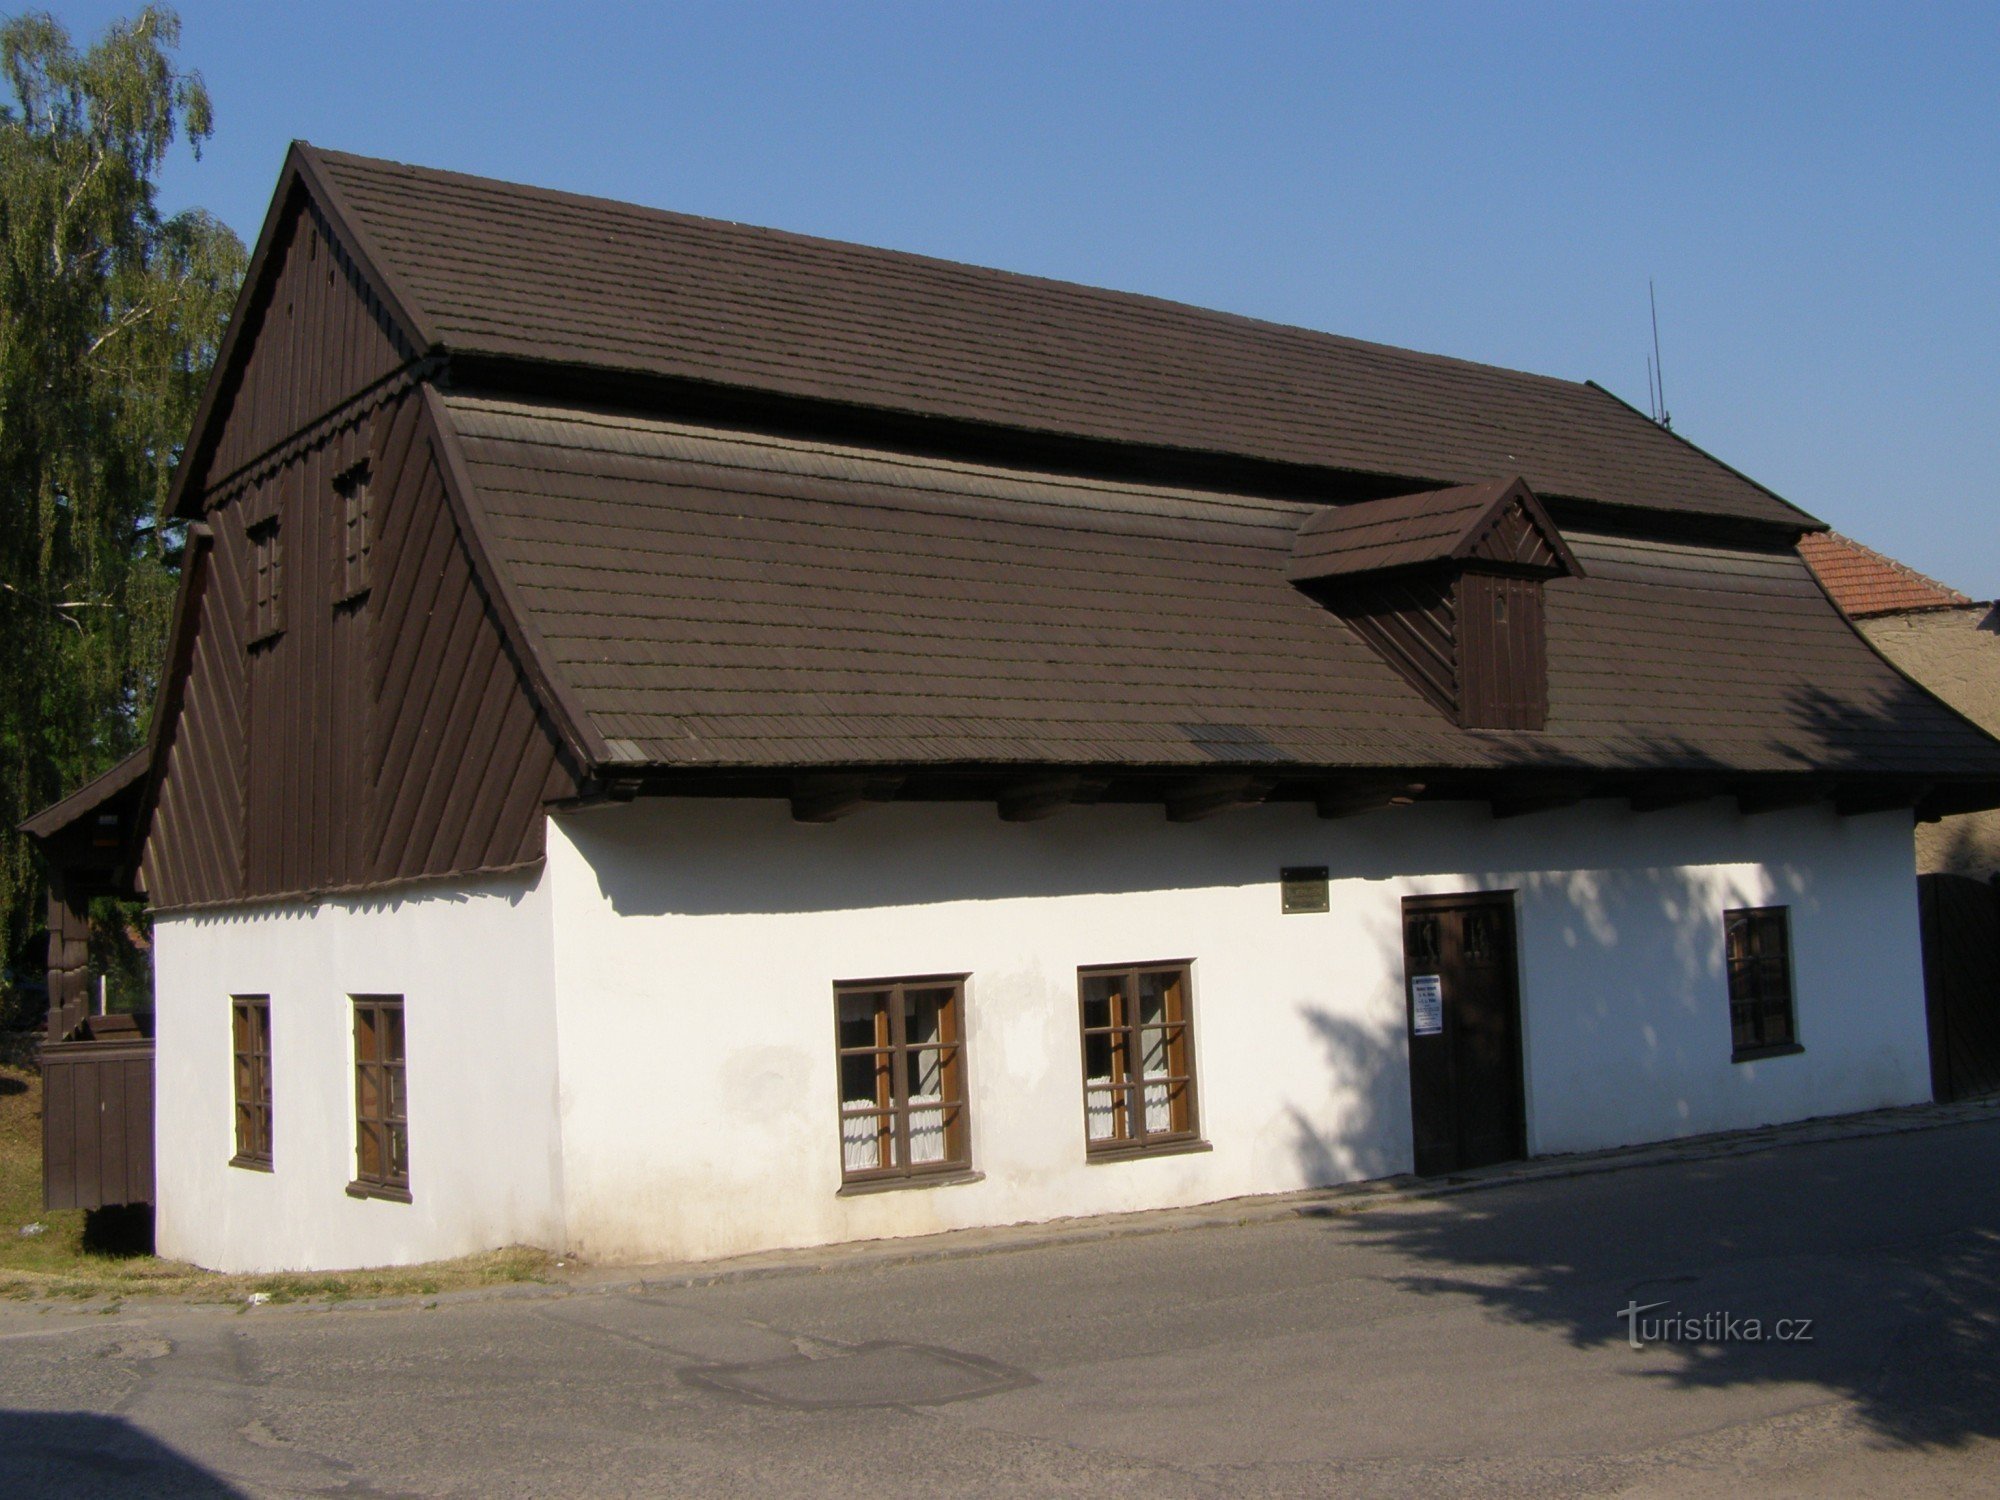 Dobruška - nơi sinh của FLVěk (Heka)